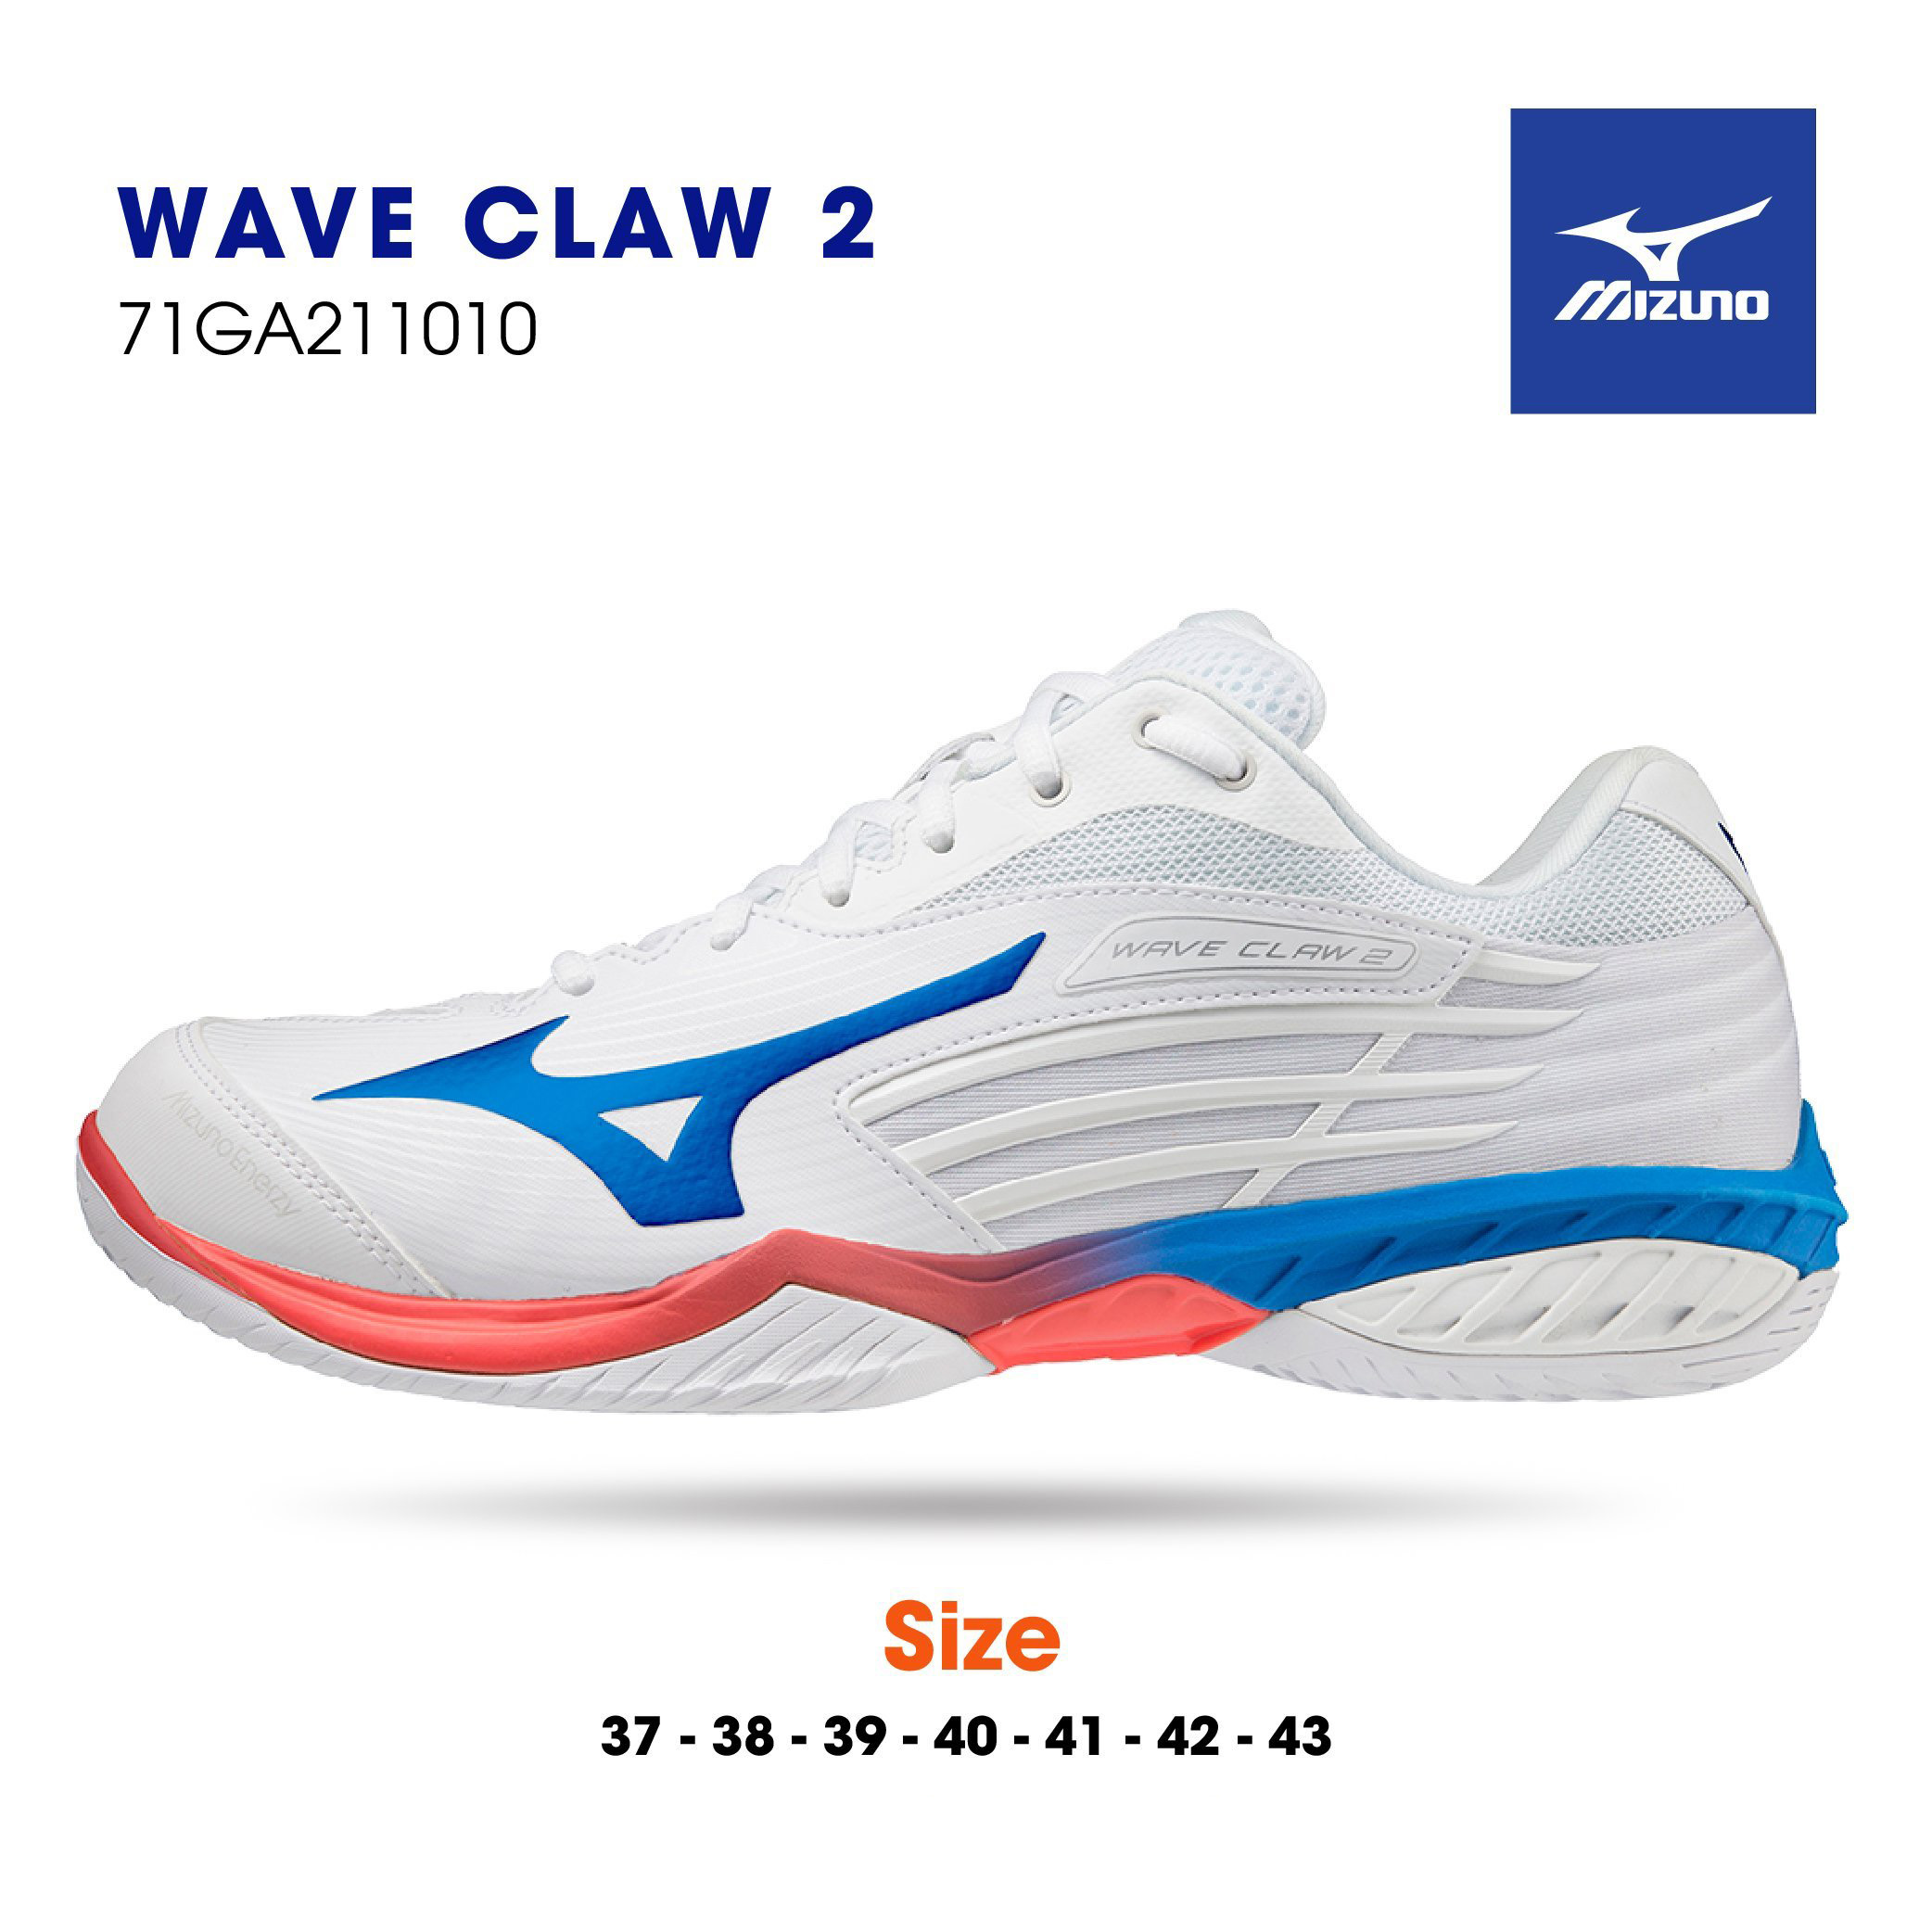 Giày cầu lông Mizuno chính hãng Wave Claw 2 71GA211006 mẫu mới có 3 màu lựa chọn-TẶNG TẤT THỂ THAO BENDU